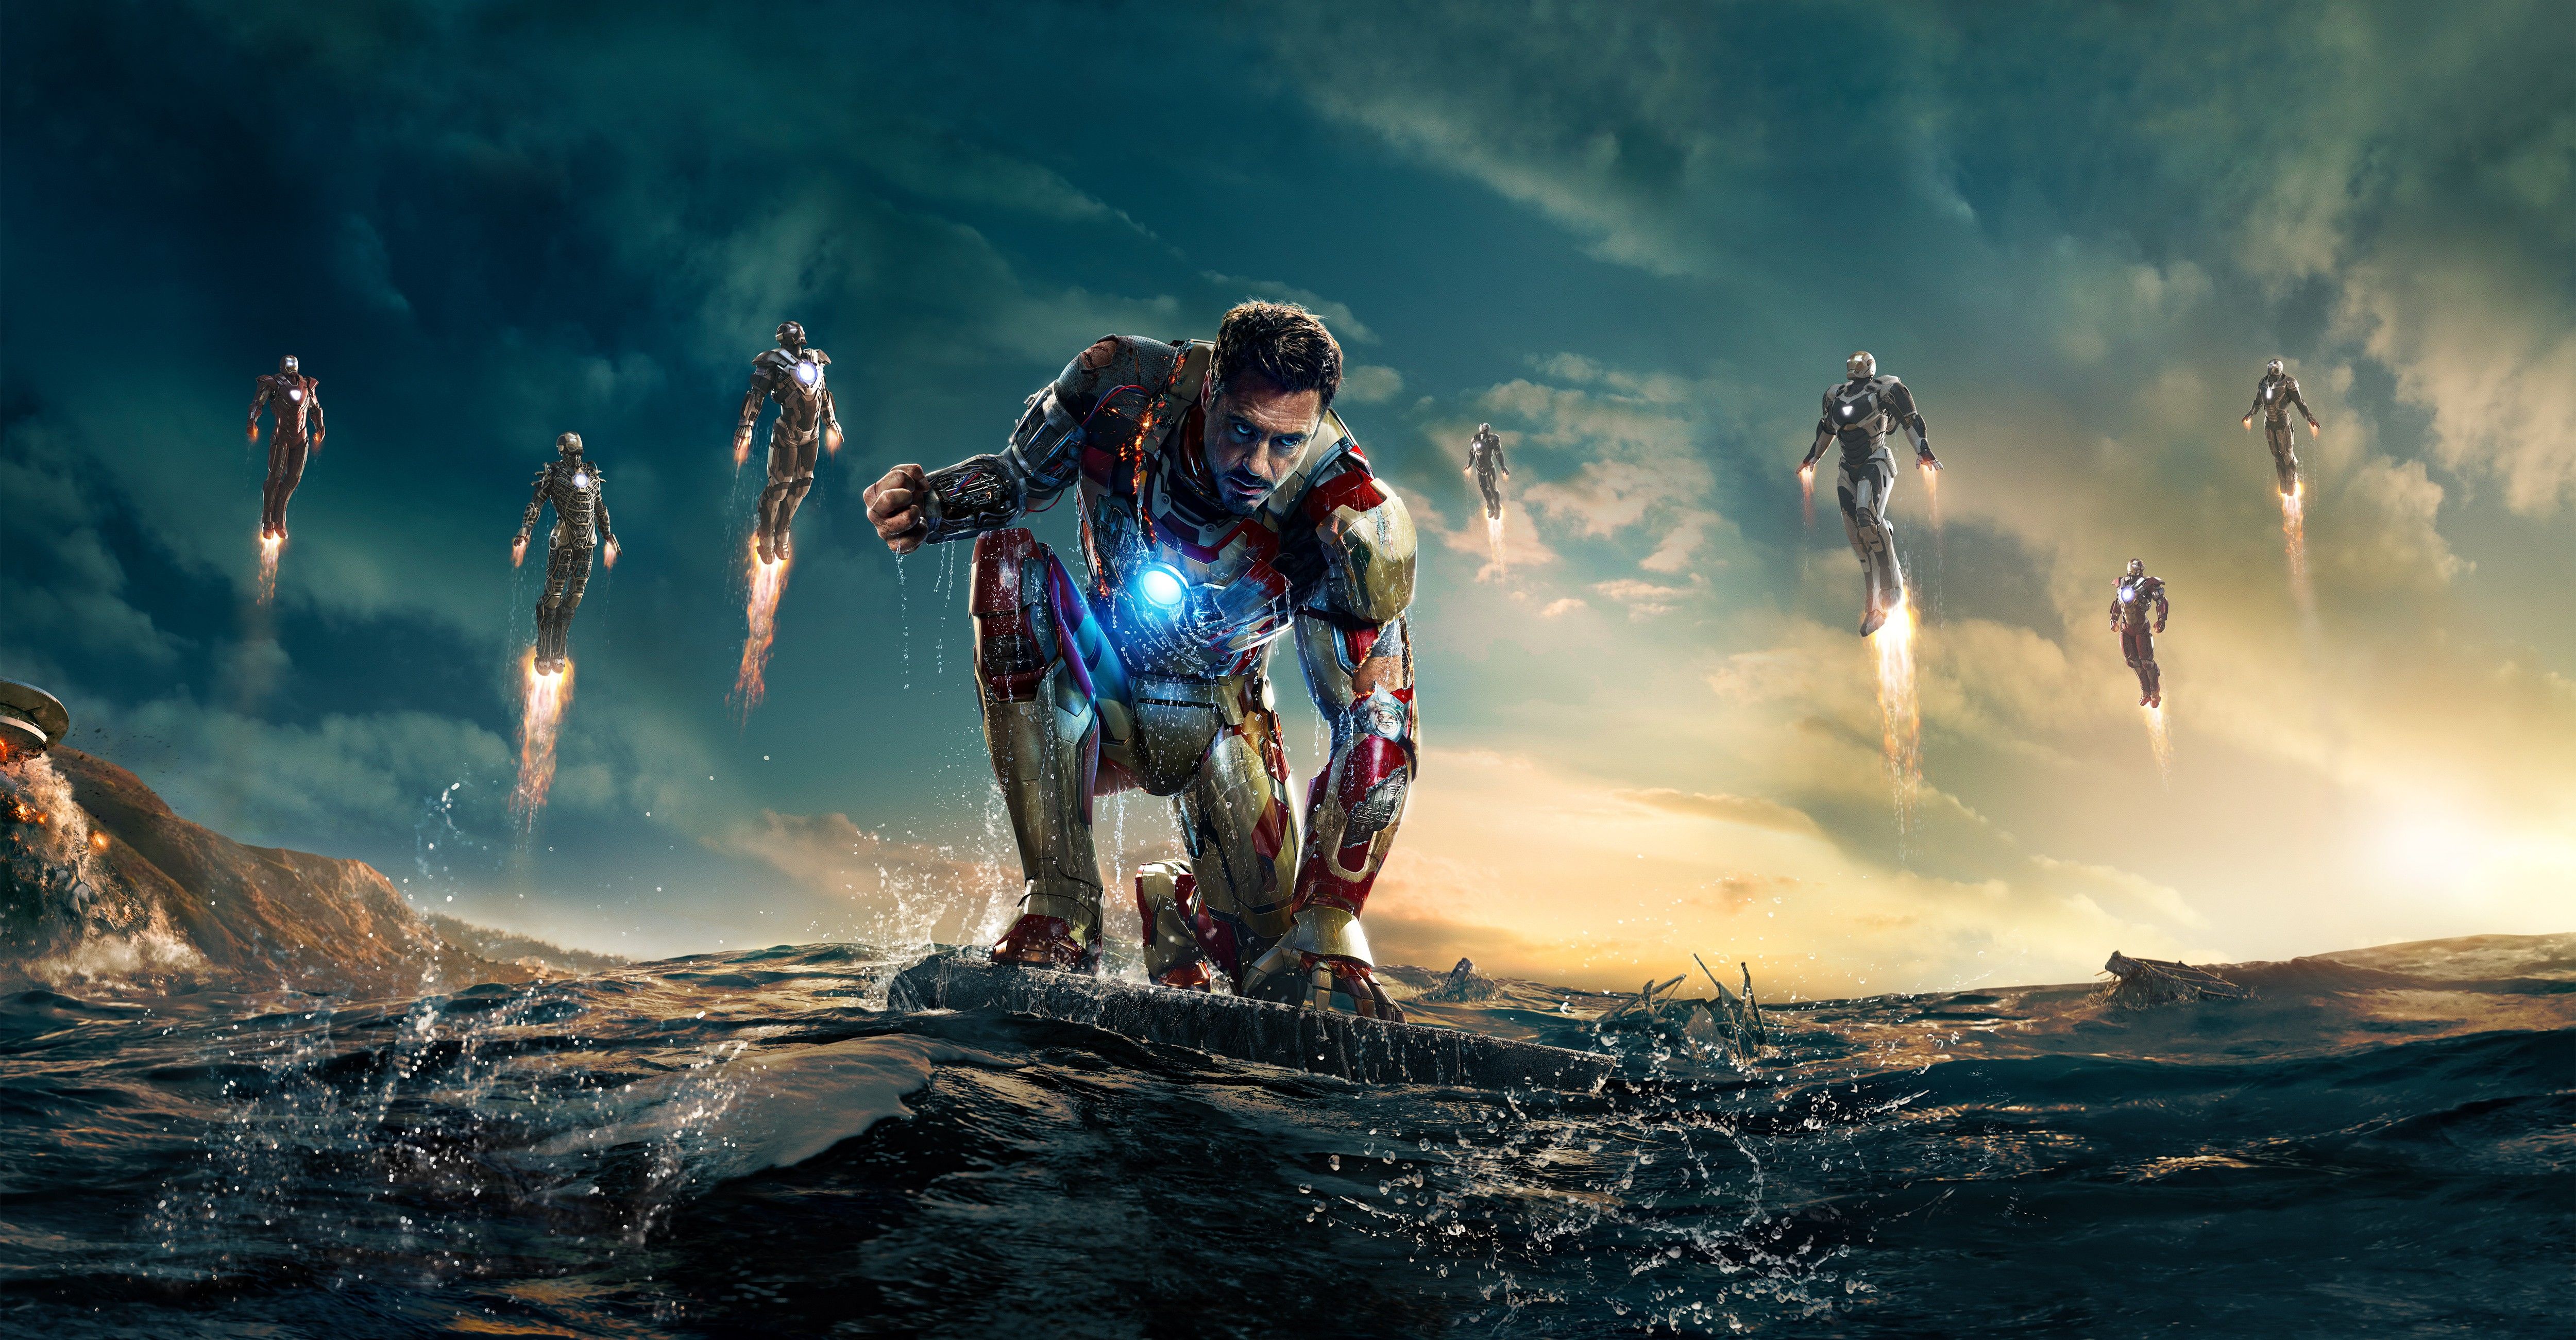 Фулл три. Железный человек 3. Тони Старк. «Железный человек 3» (Iron man 3, 2013).